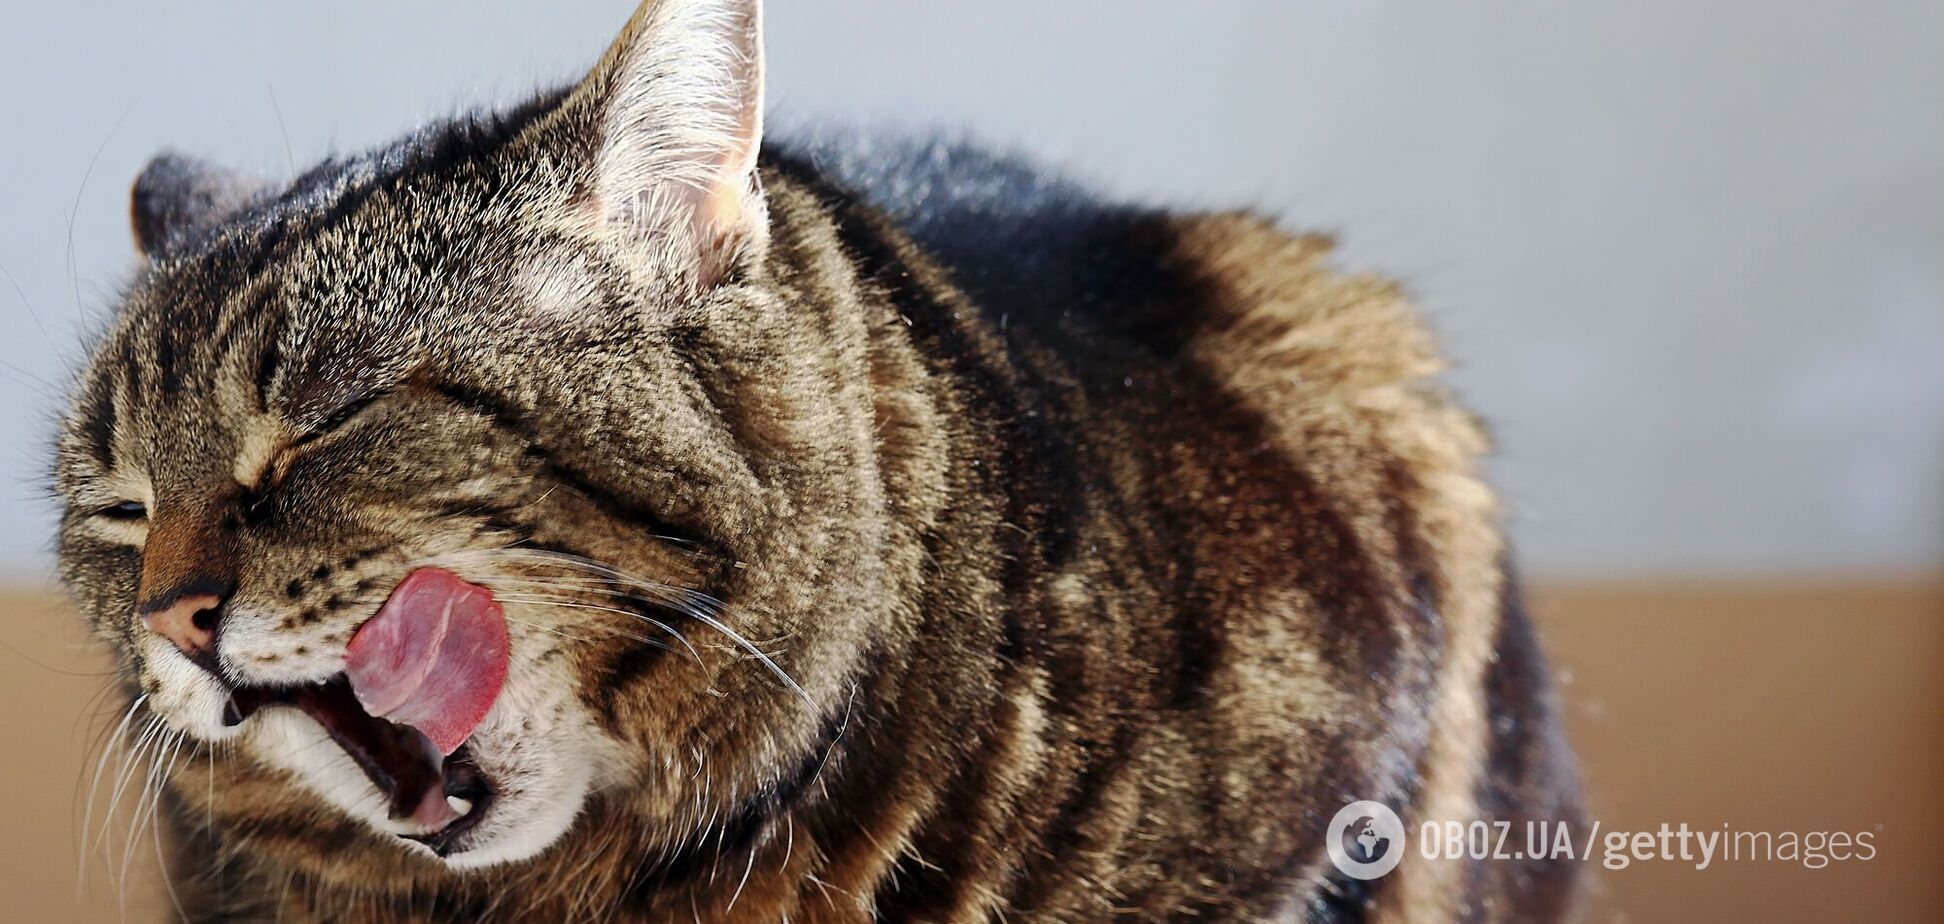 Хозяевам одного из самых толстых котов в мире пожелали смерти. Как выглядит животное и почему возник скандал